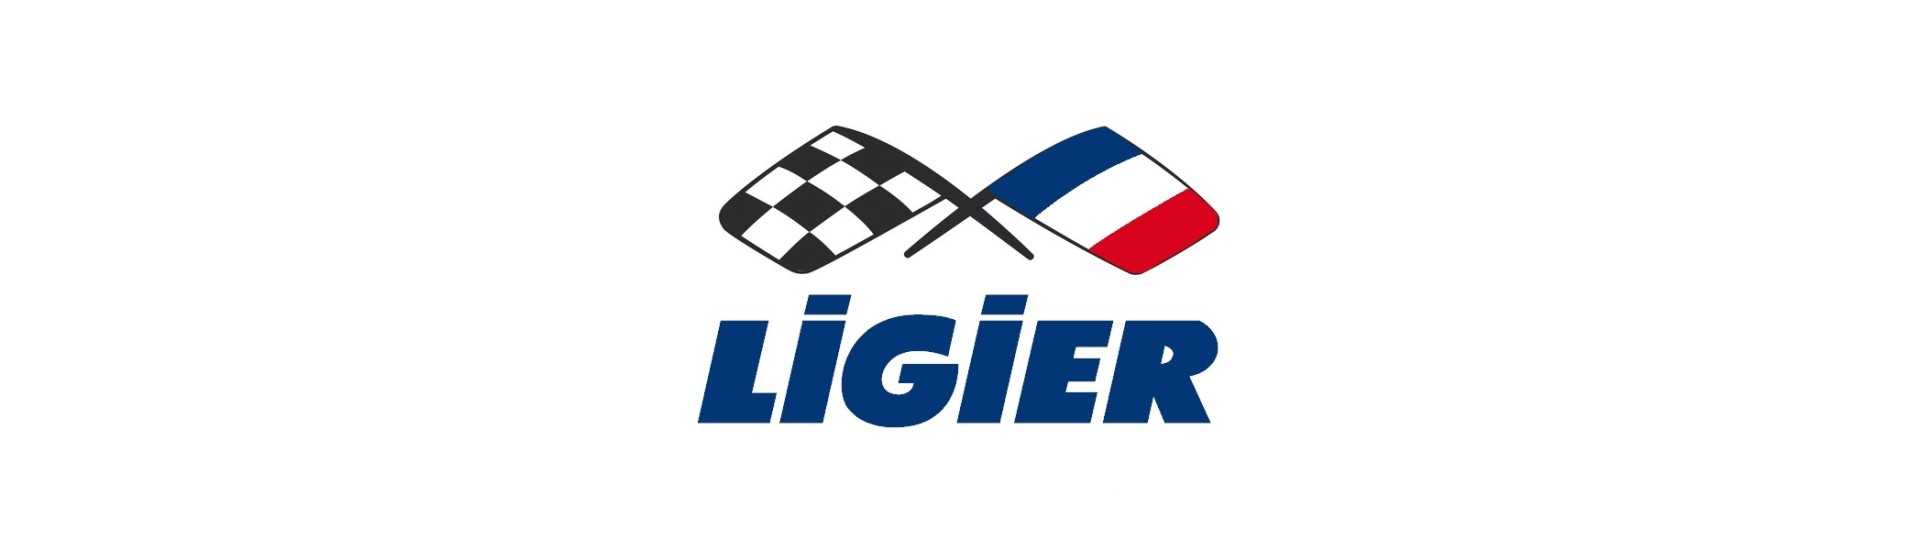 Plafonnier au meilleur prix pour voiture sans permis Ligier